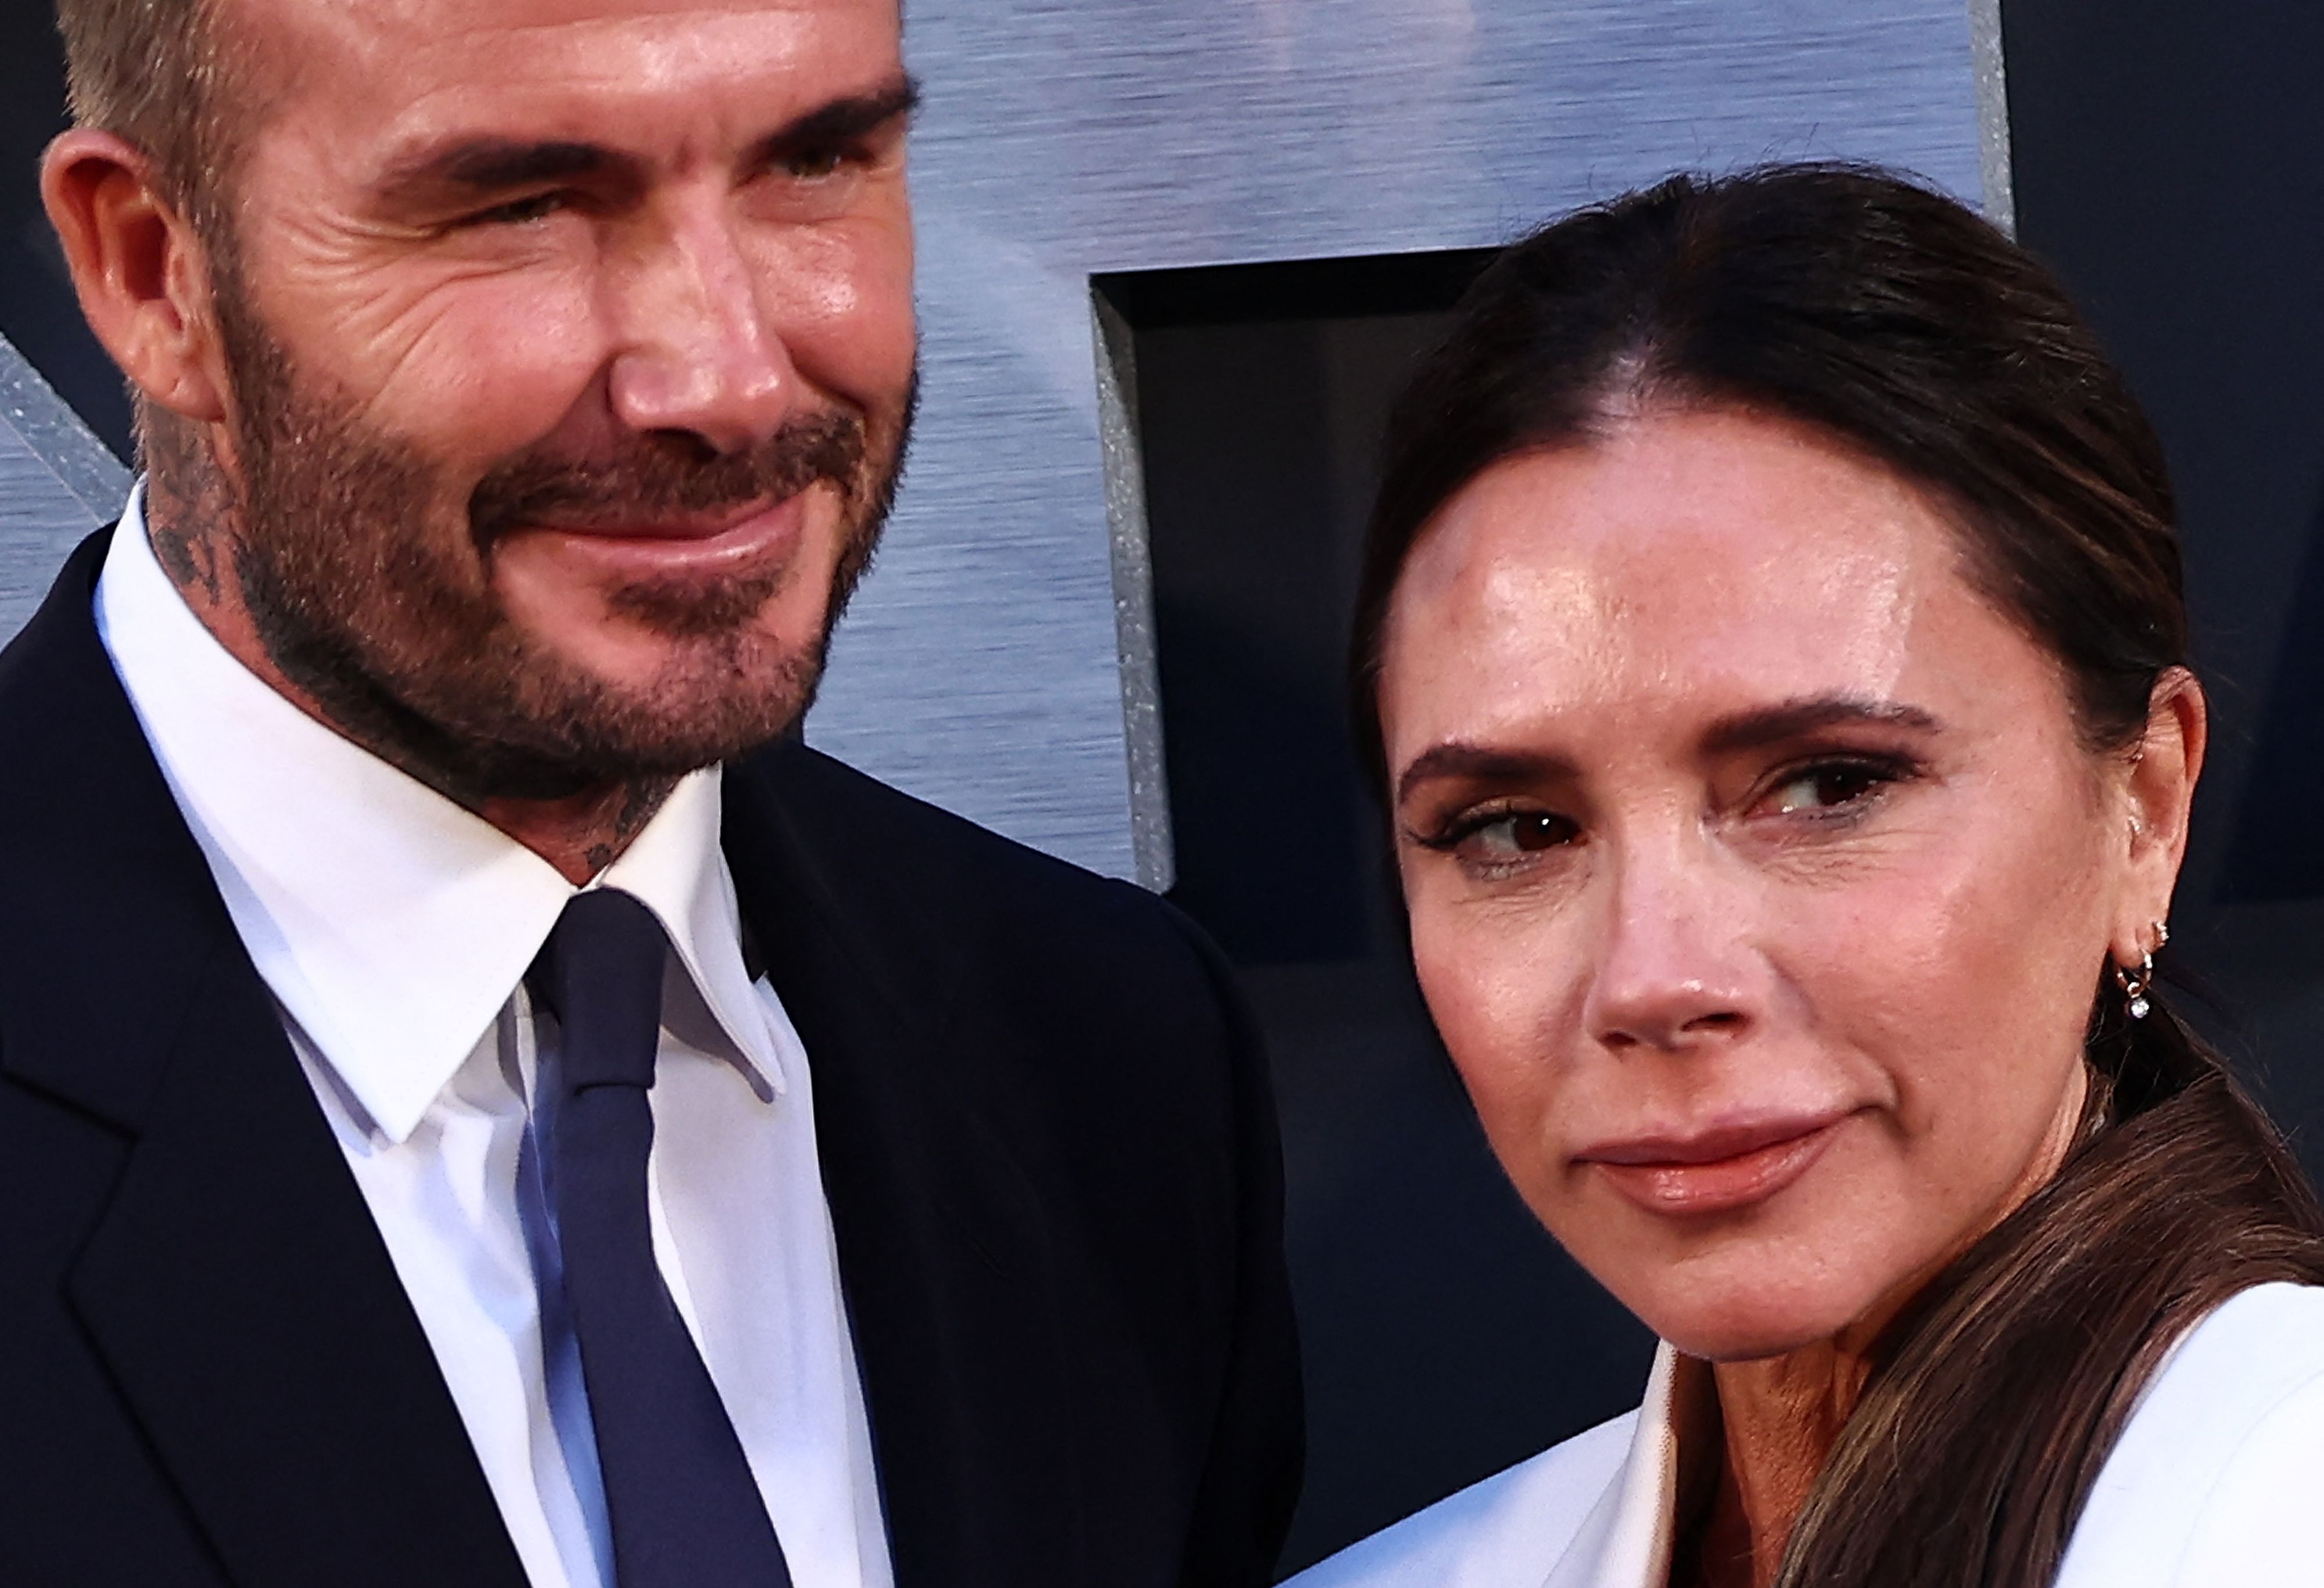 Victoria Beckham partage une photo coquine de David Beckham : “On a tous  zoomé, non ?” - La DHLes Sports+